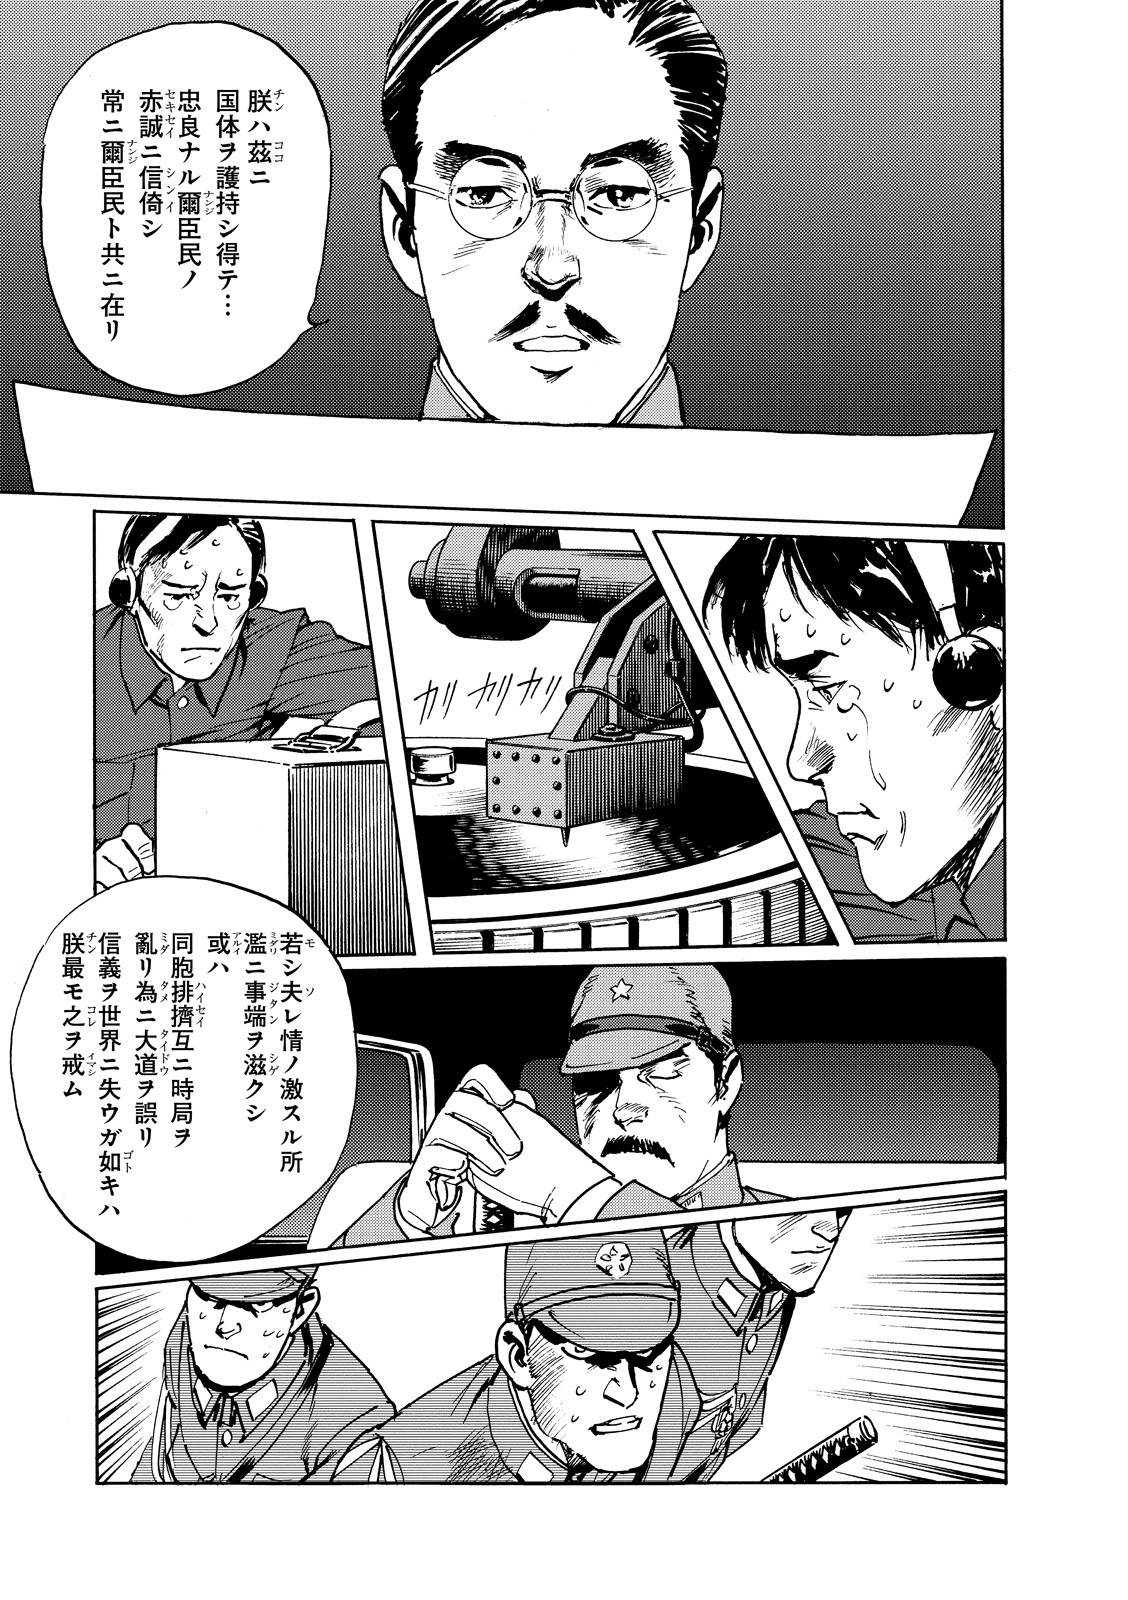 コミック版『日本のいちばん長い日』5